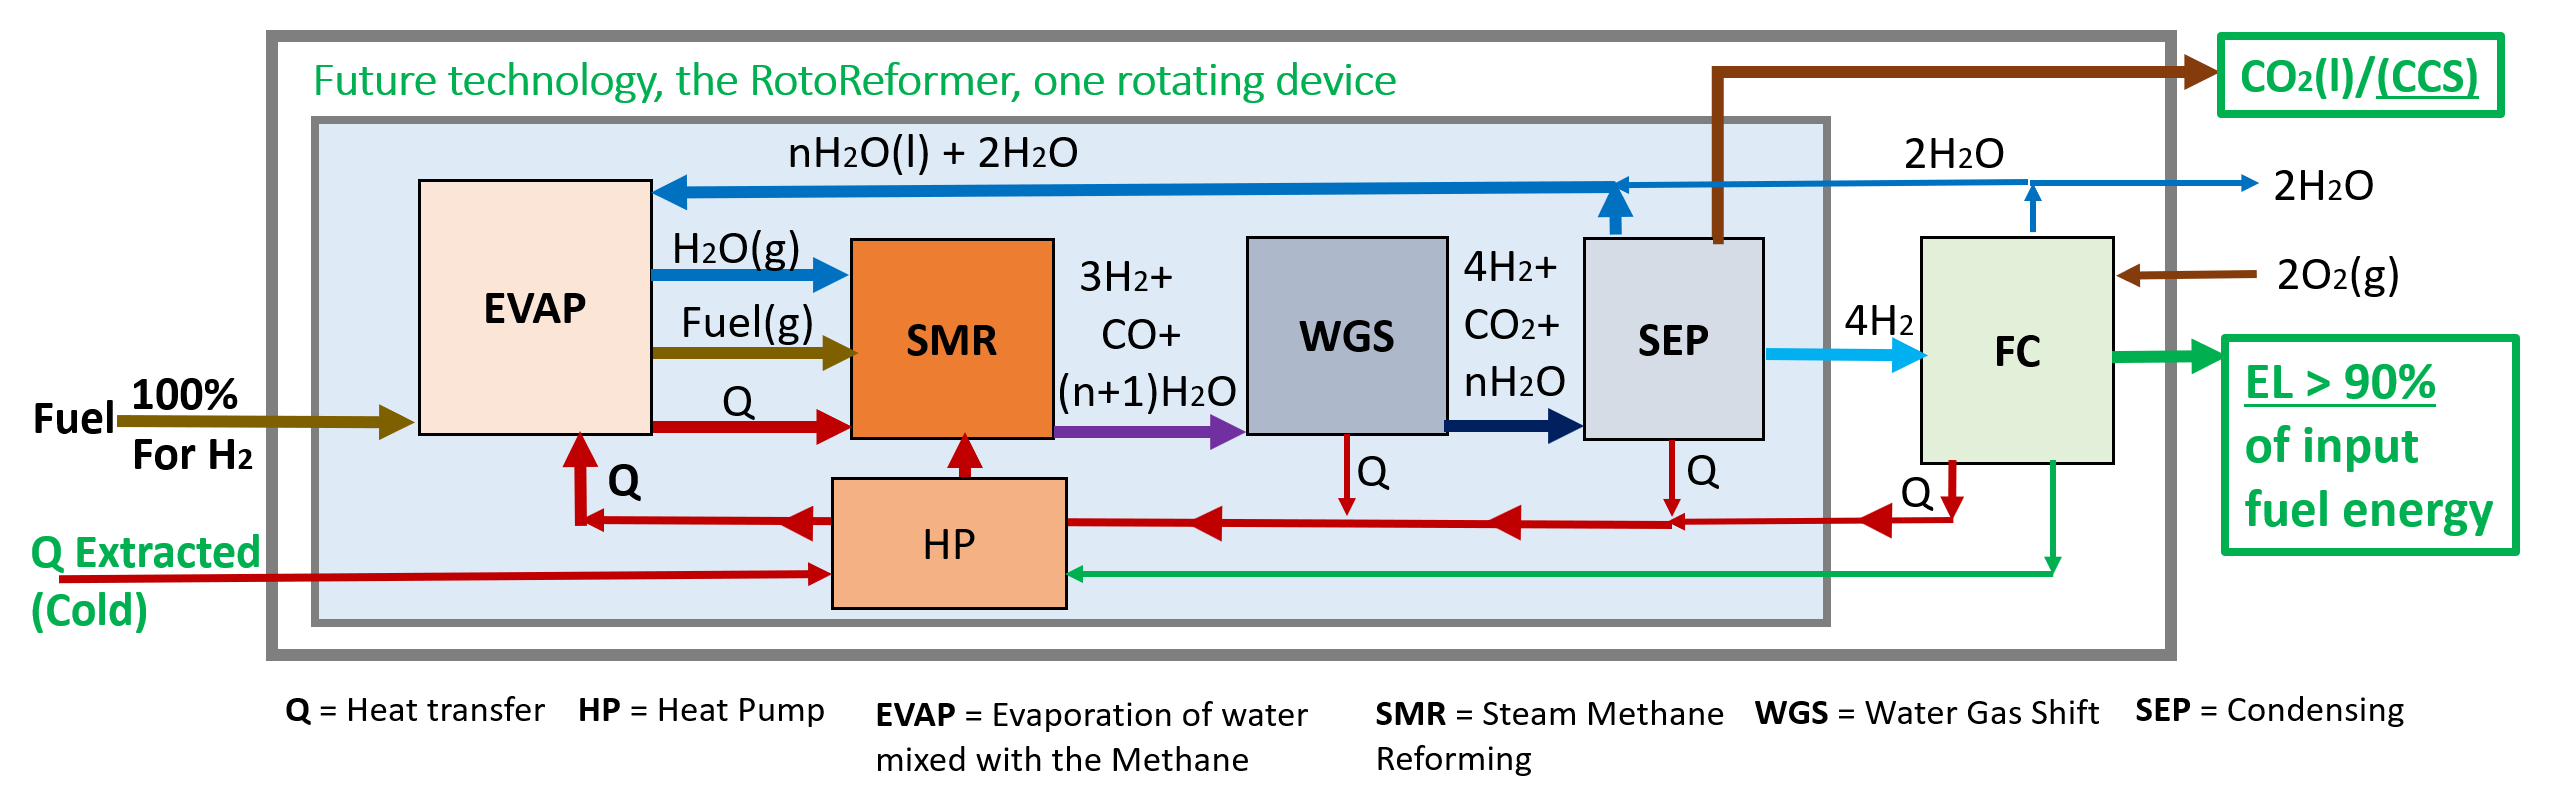 RotoReformer process diagram